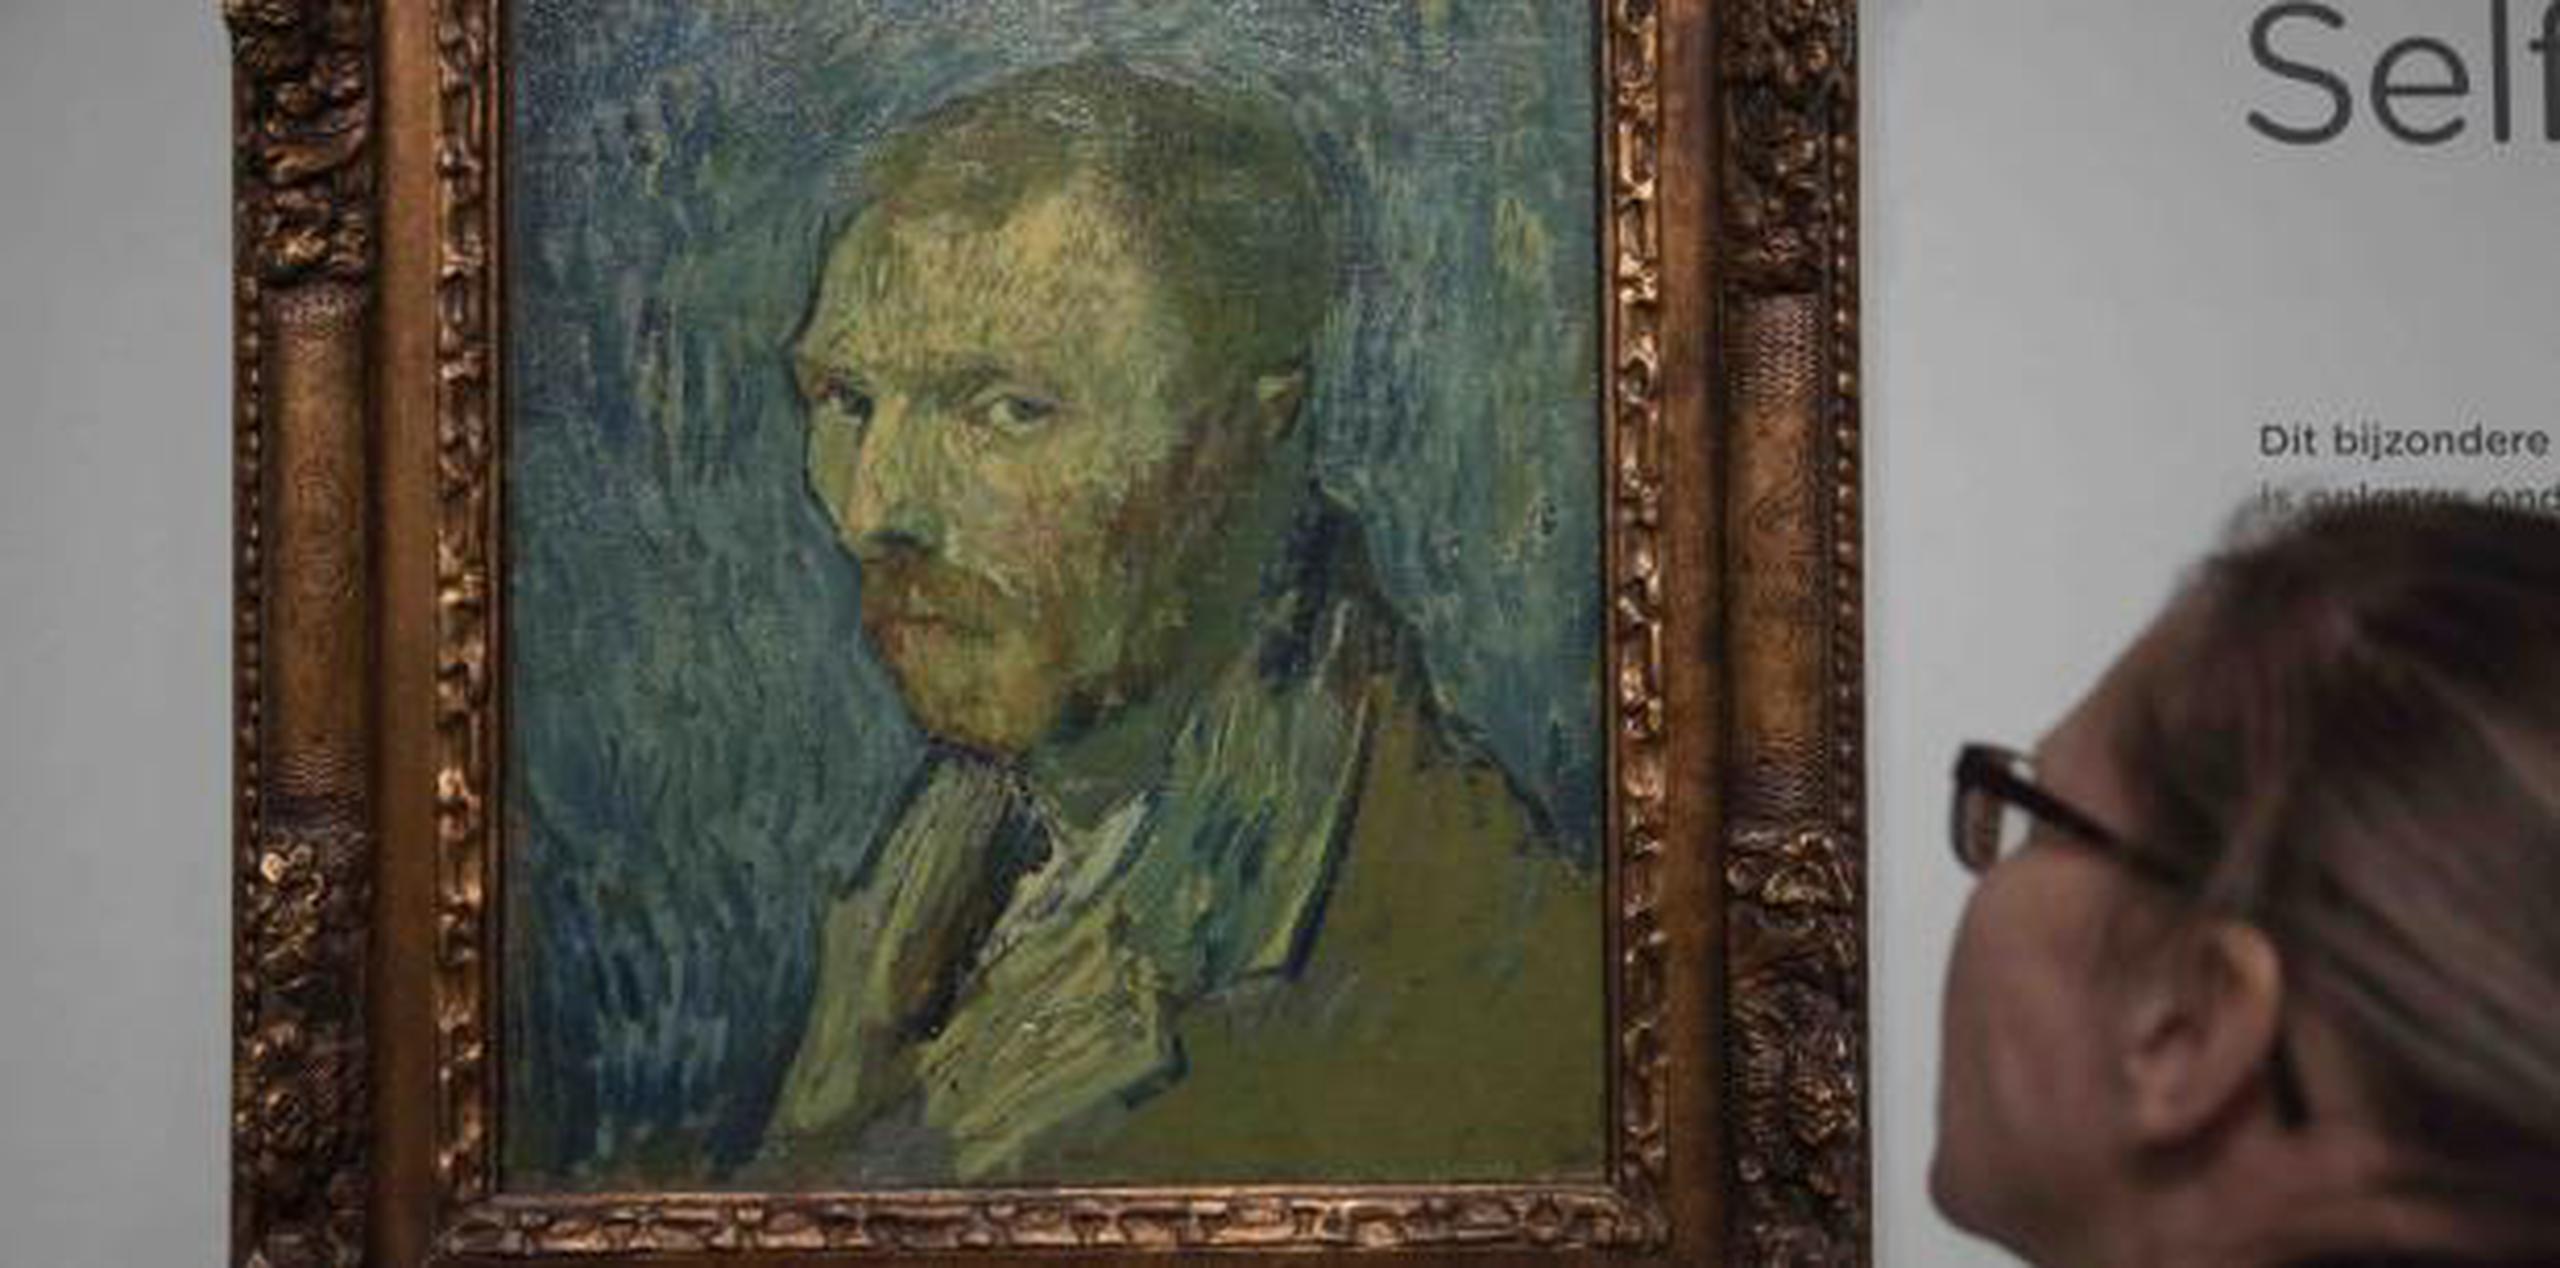 Van Tilborgh explicó que el uso de un lienzo viejo y un color verde ocre eran en realidad típicos de la pintura de Van Gogh cuando estaba confinado a la institución en Saint-Remy en 1889. (AP)